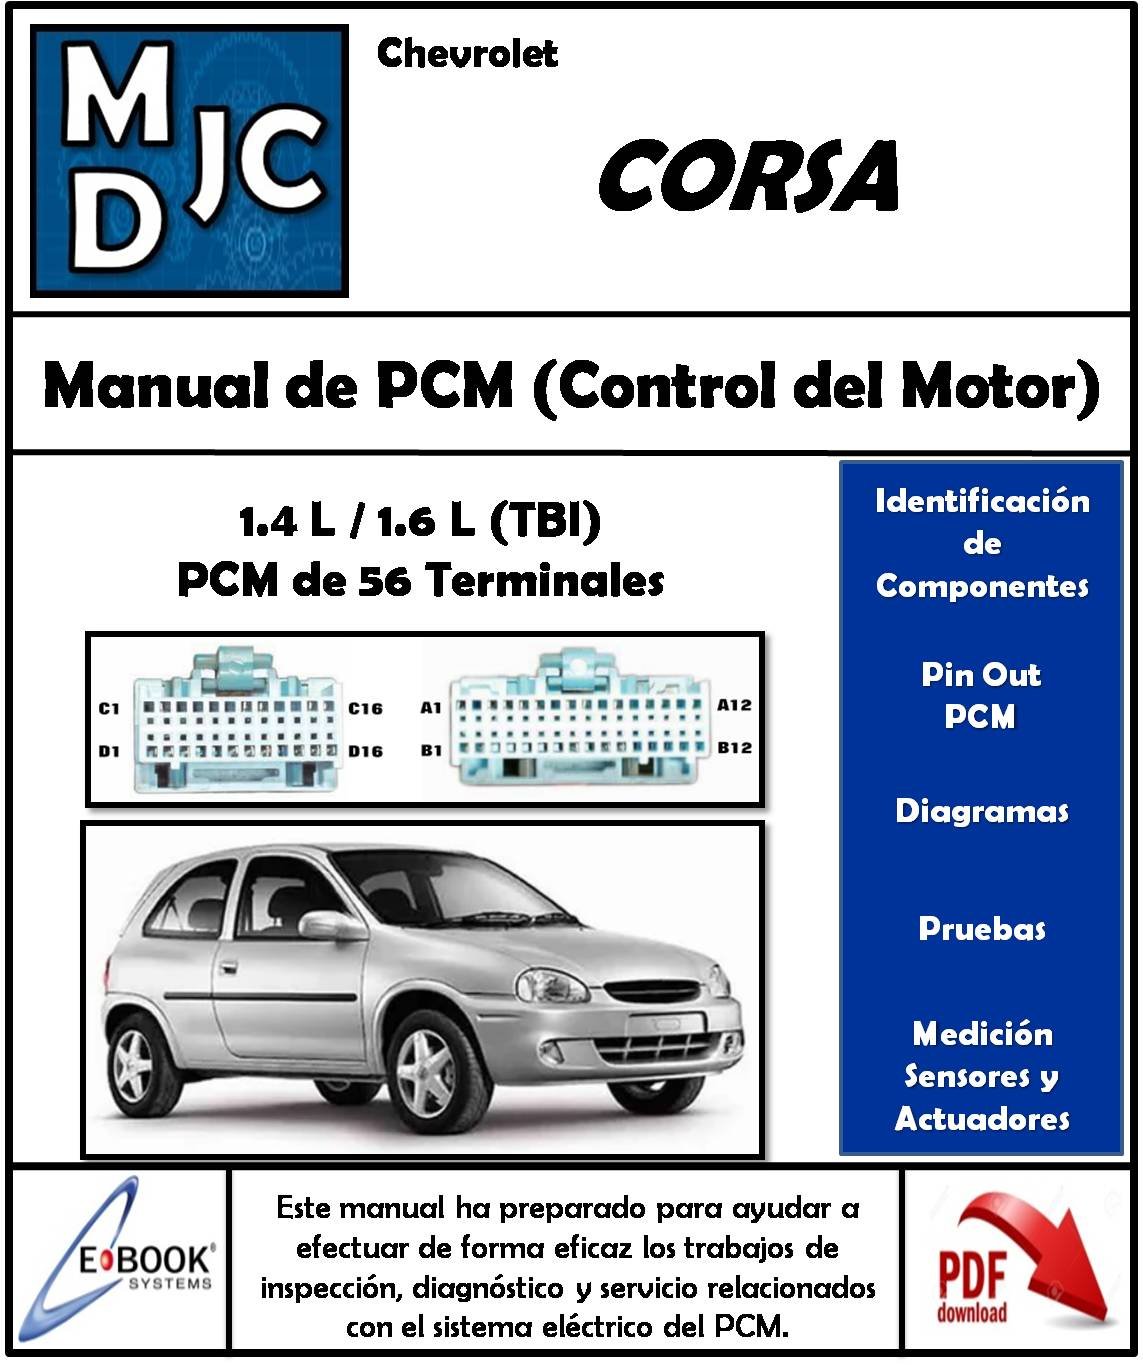 Manual de ECM y Control del Motor Chevrolet Corsa 1.4 L / 1.6 L (TBI)